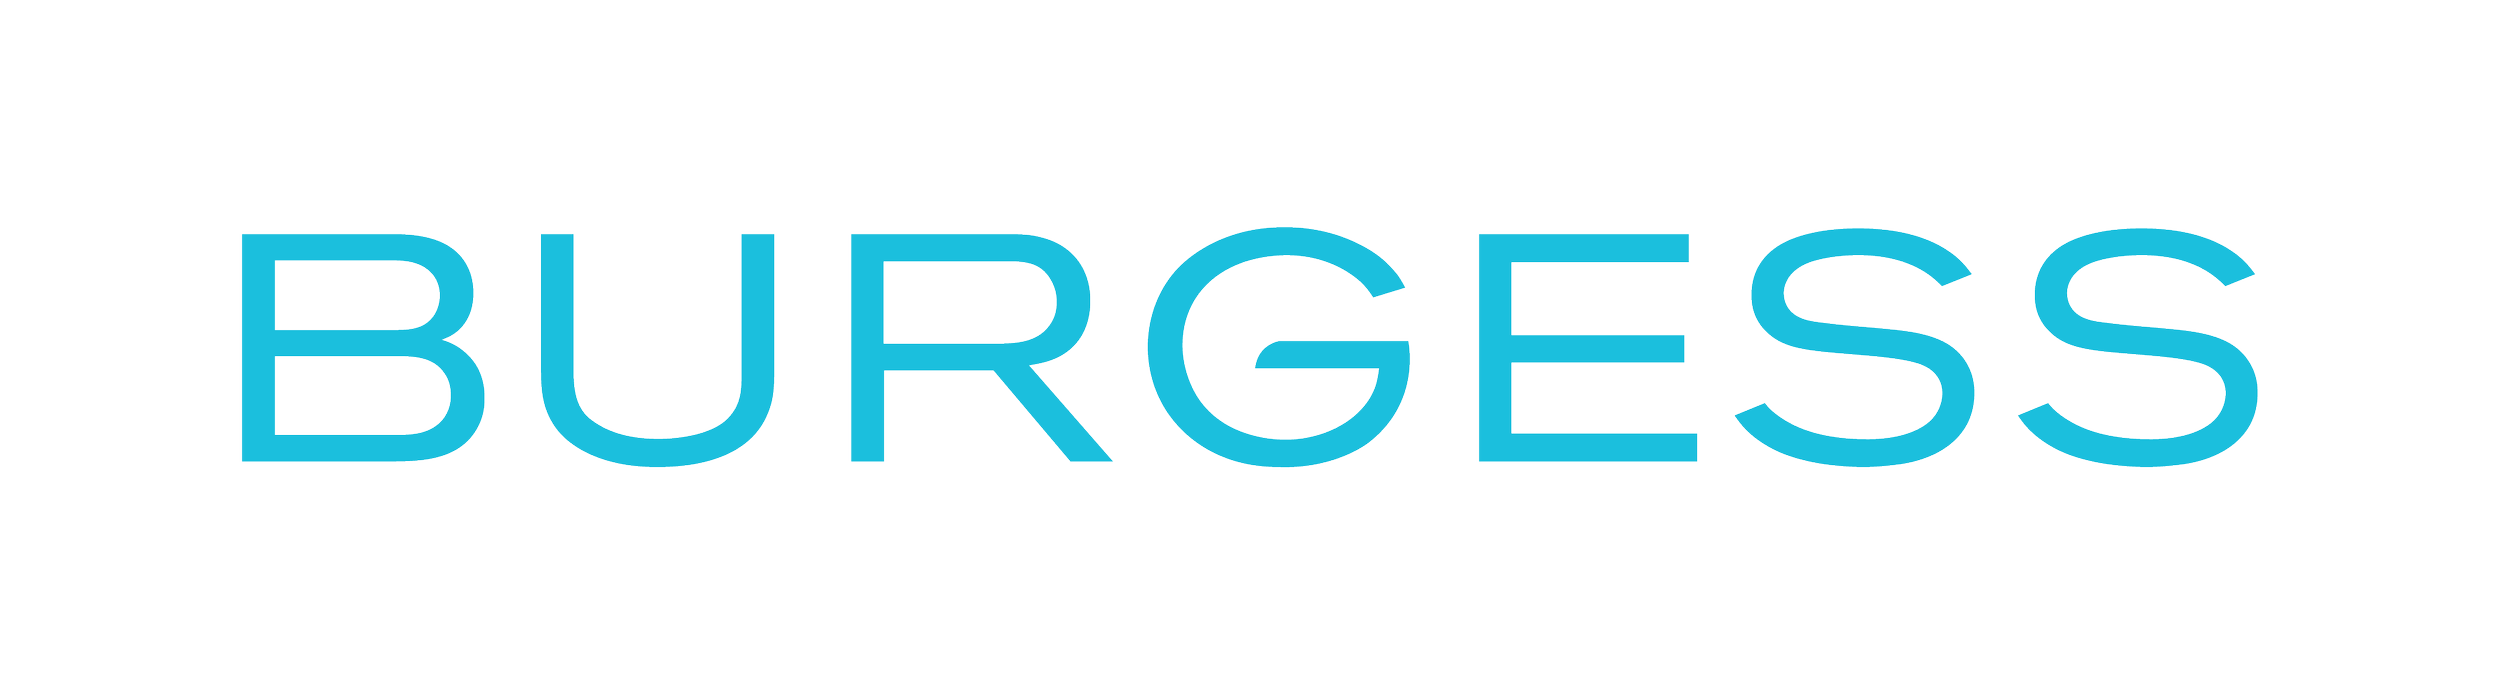 Burgess-Logo.png